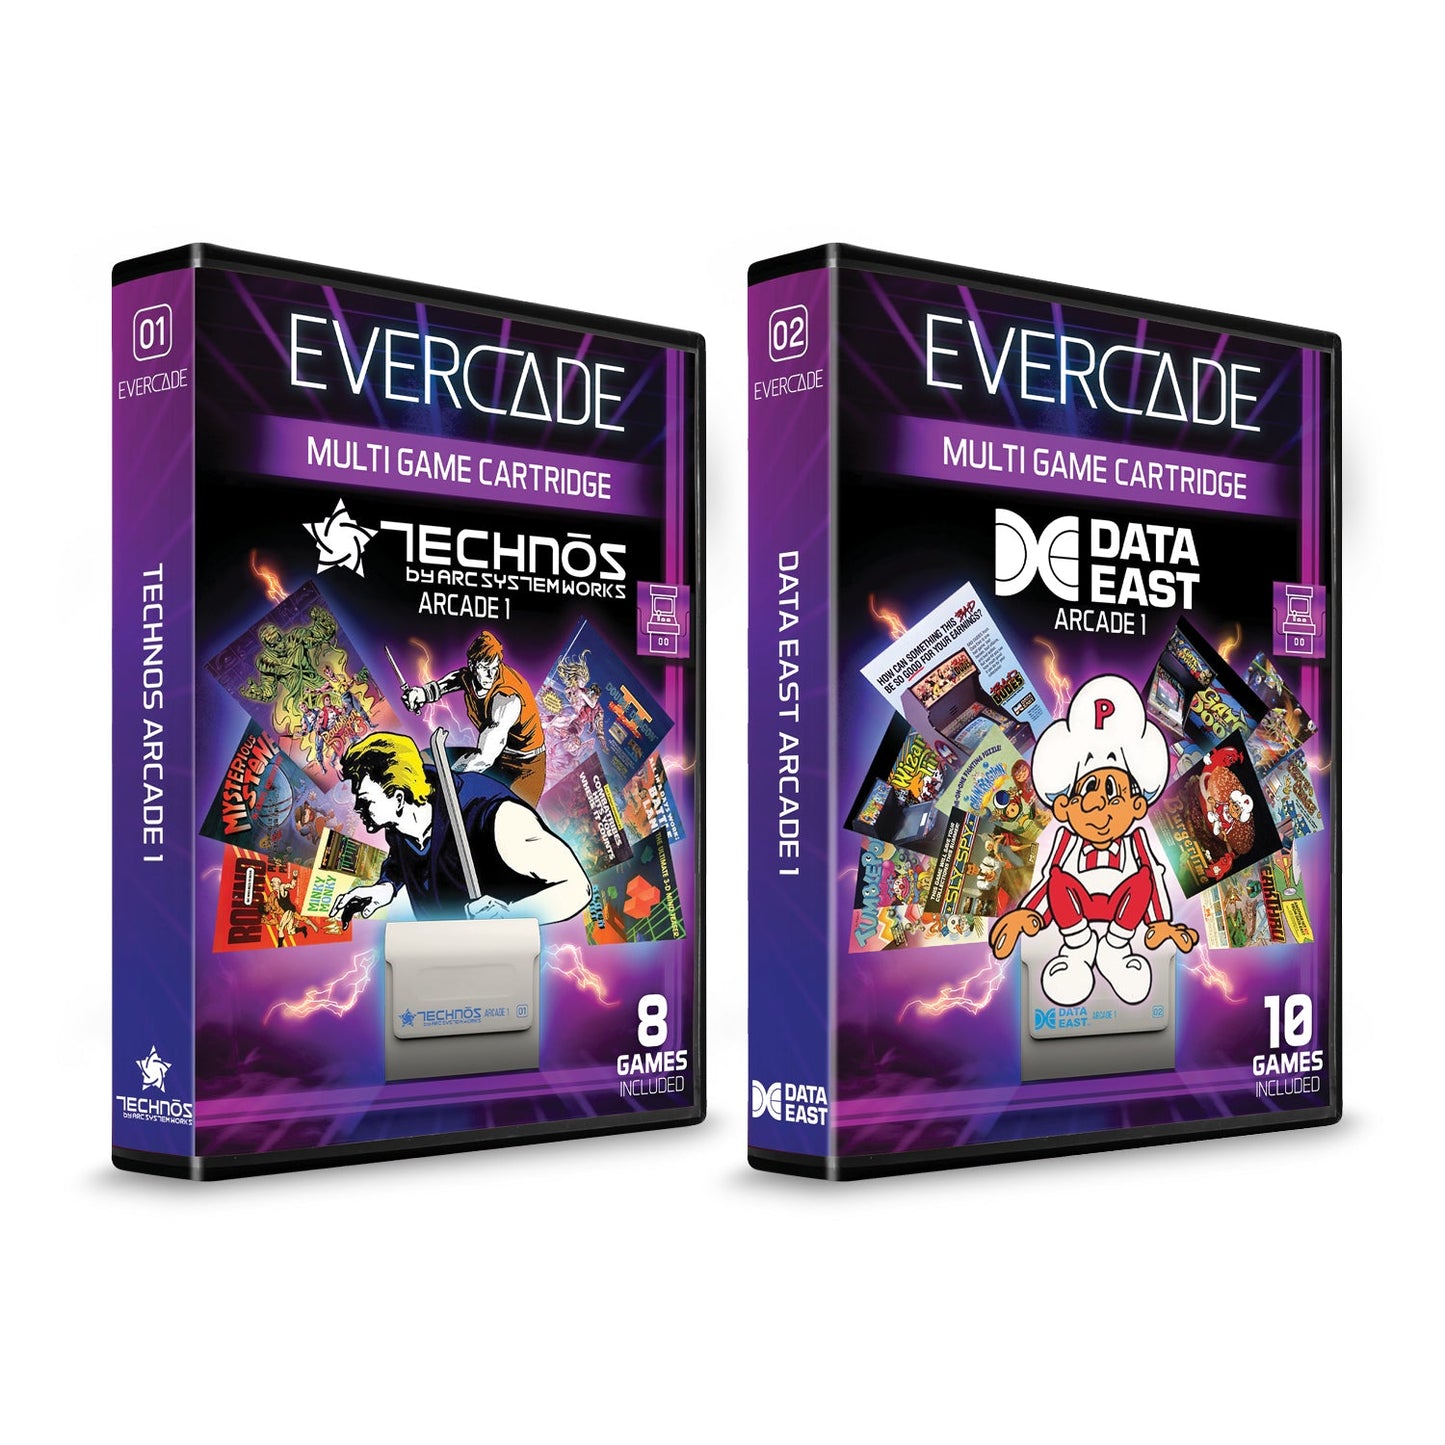 Evercade VS Premium Pack - CastleMania Games